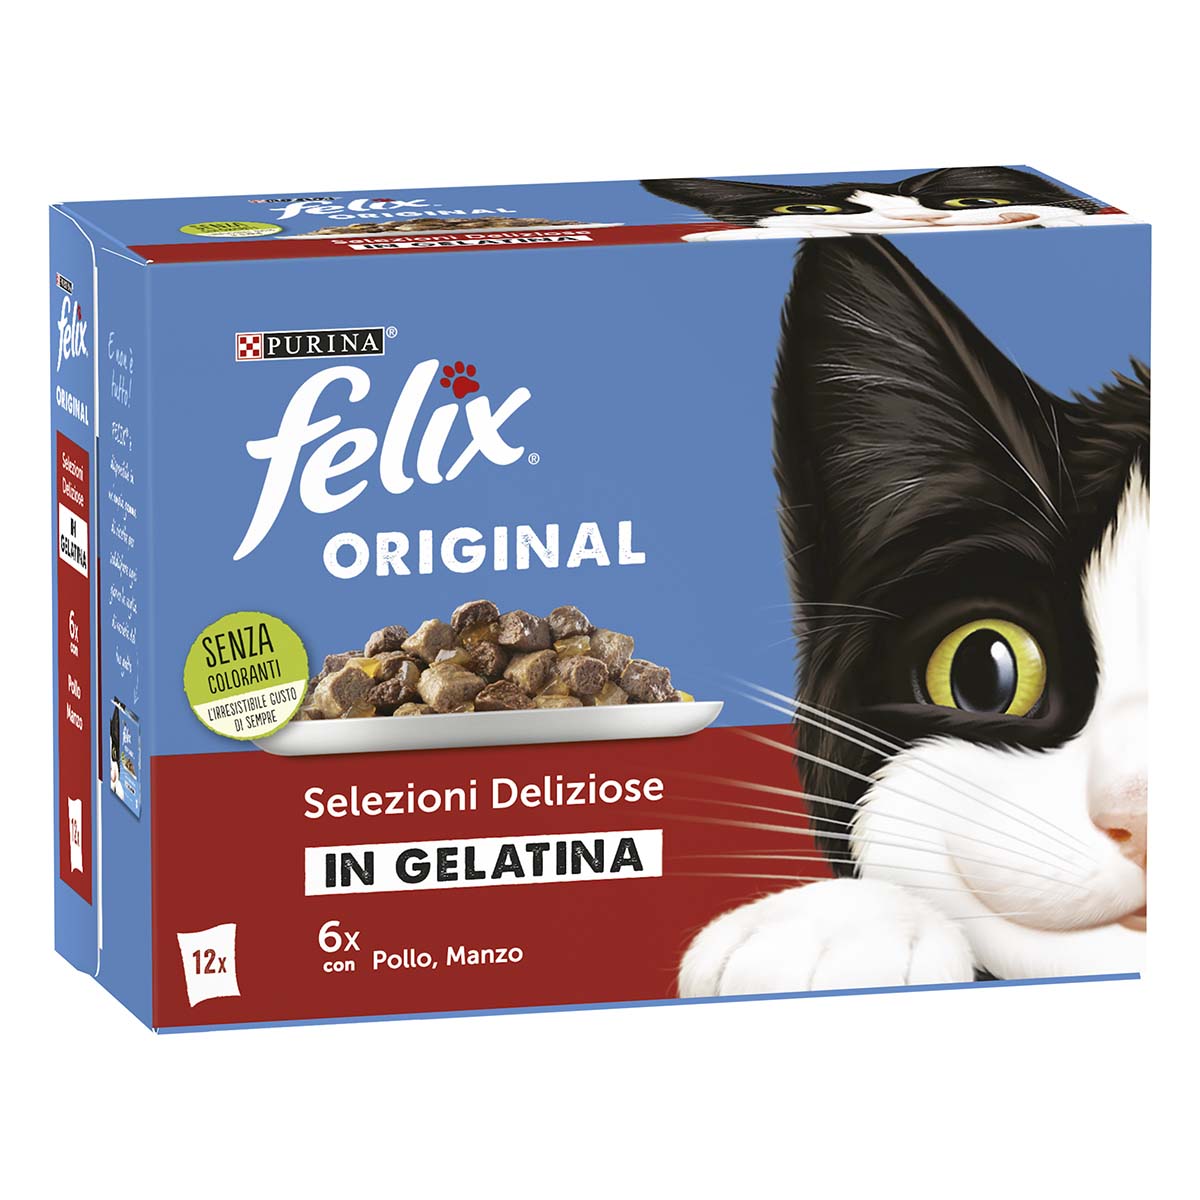 Felix Original Selezioni Deliziose